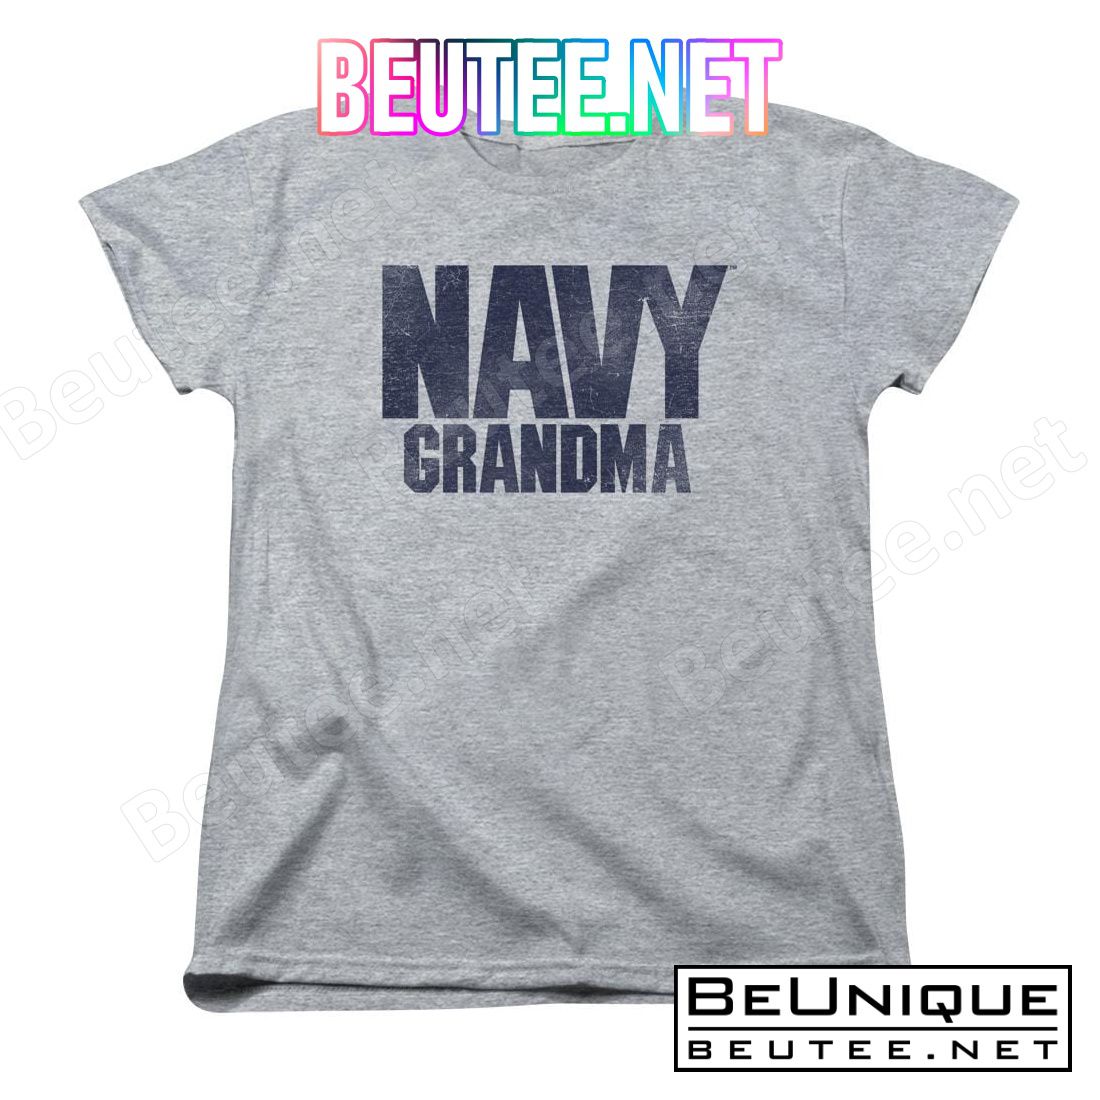 U.S. Navy Grandma T-shirt